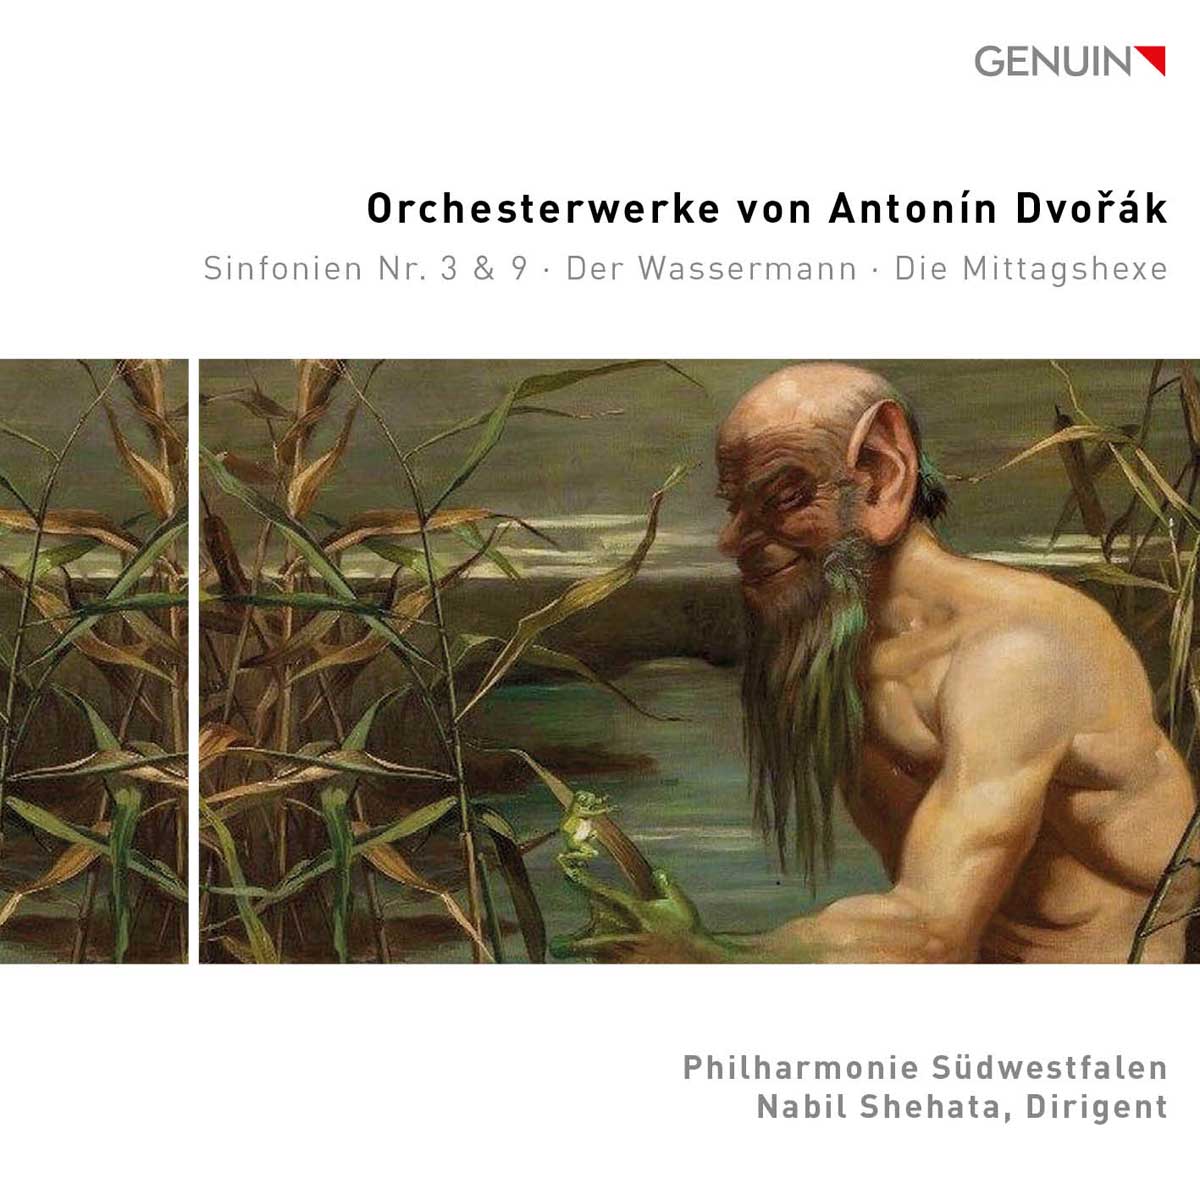 CD album cover 'Orchestral Works by Antonín Dvorák' (GEN 24853) with Philharmonie Südwestfalen, Nabil Shehata